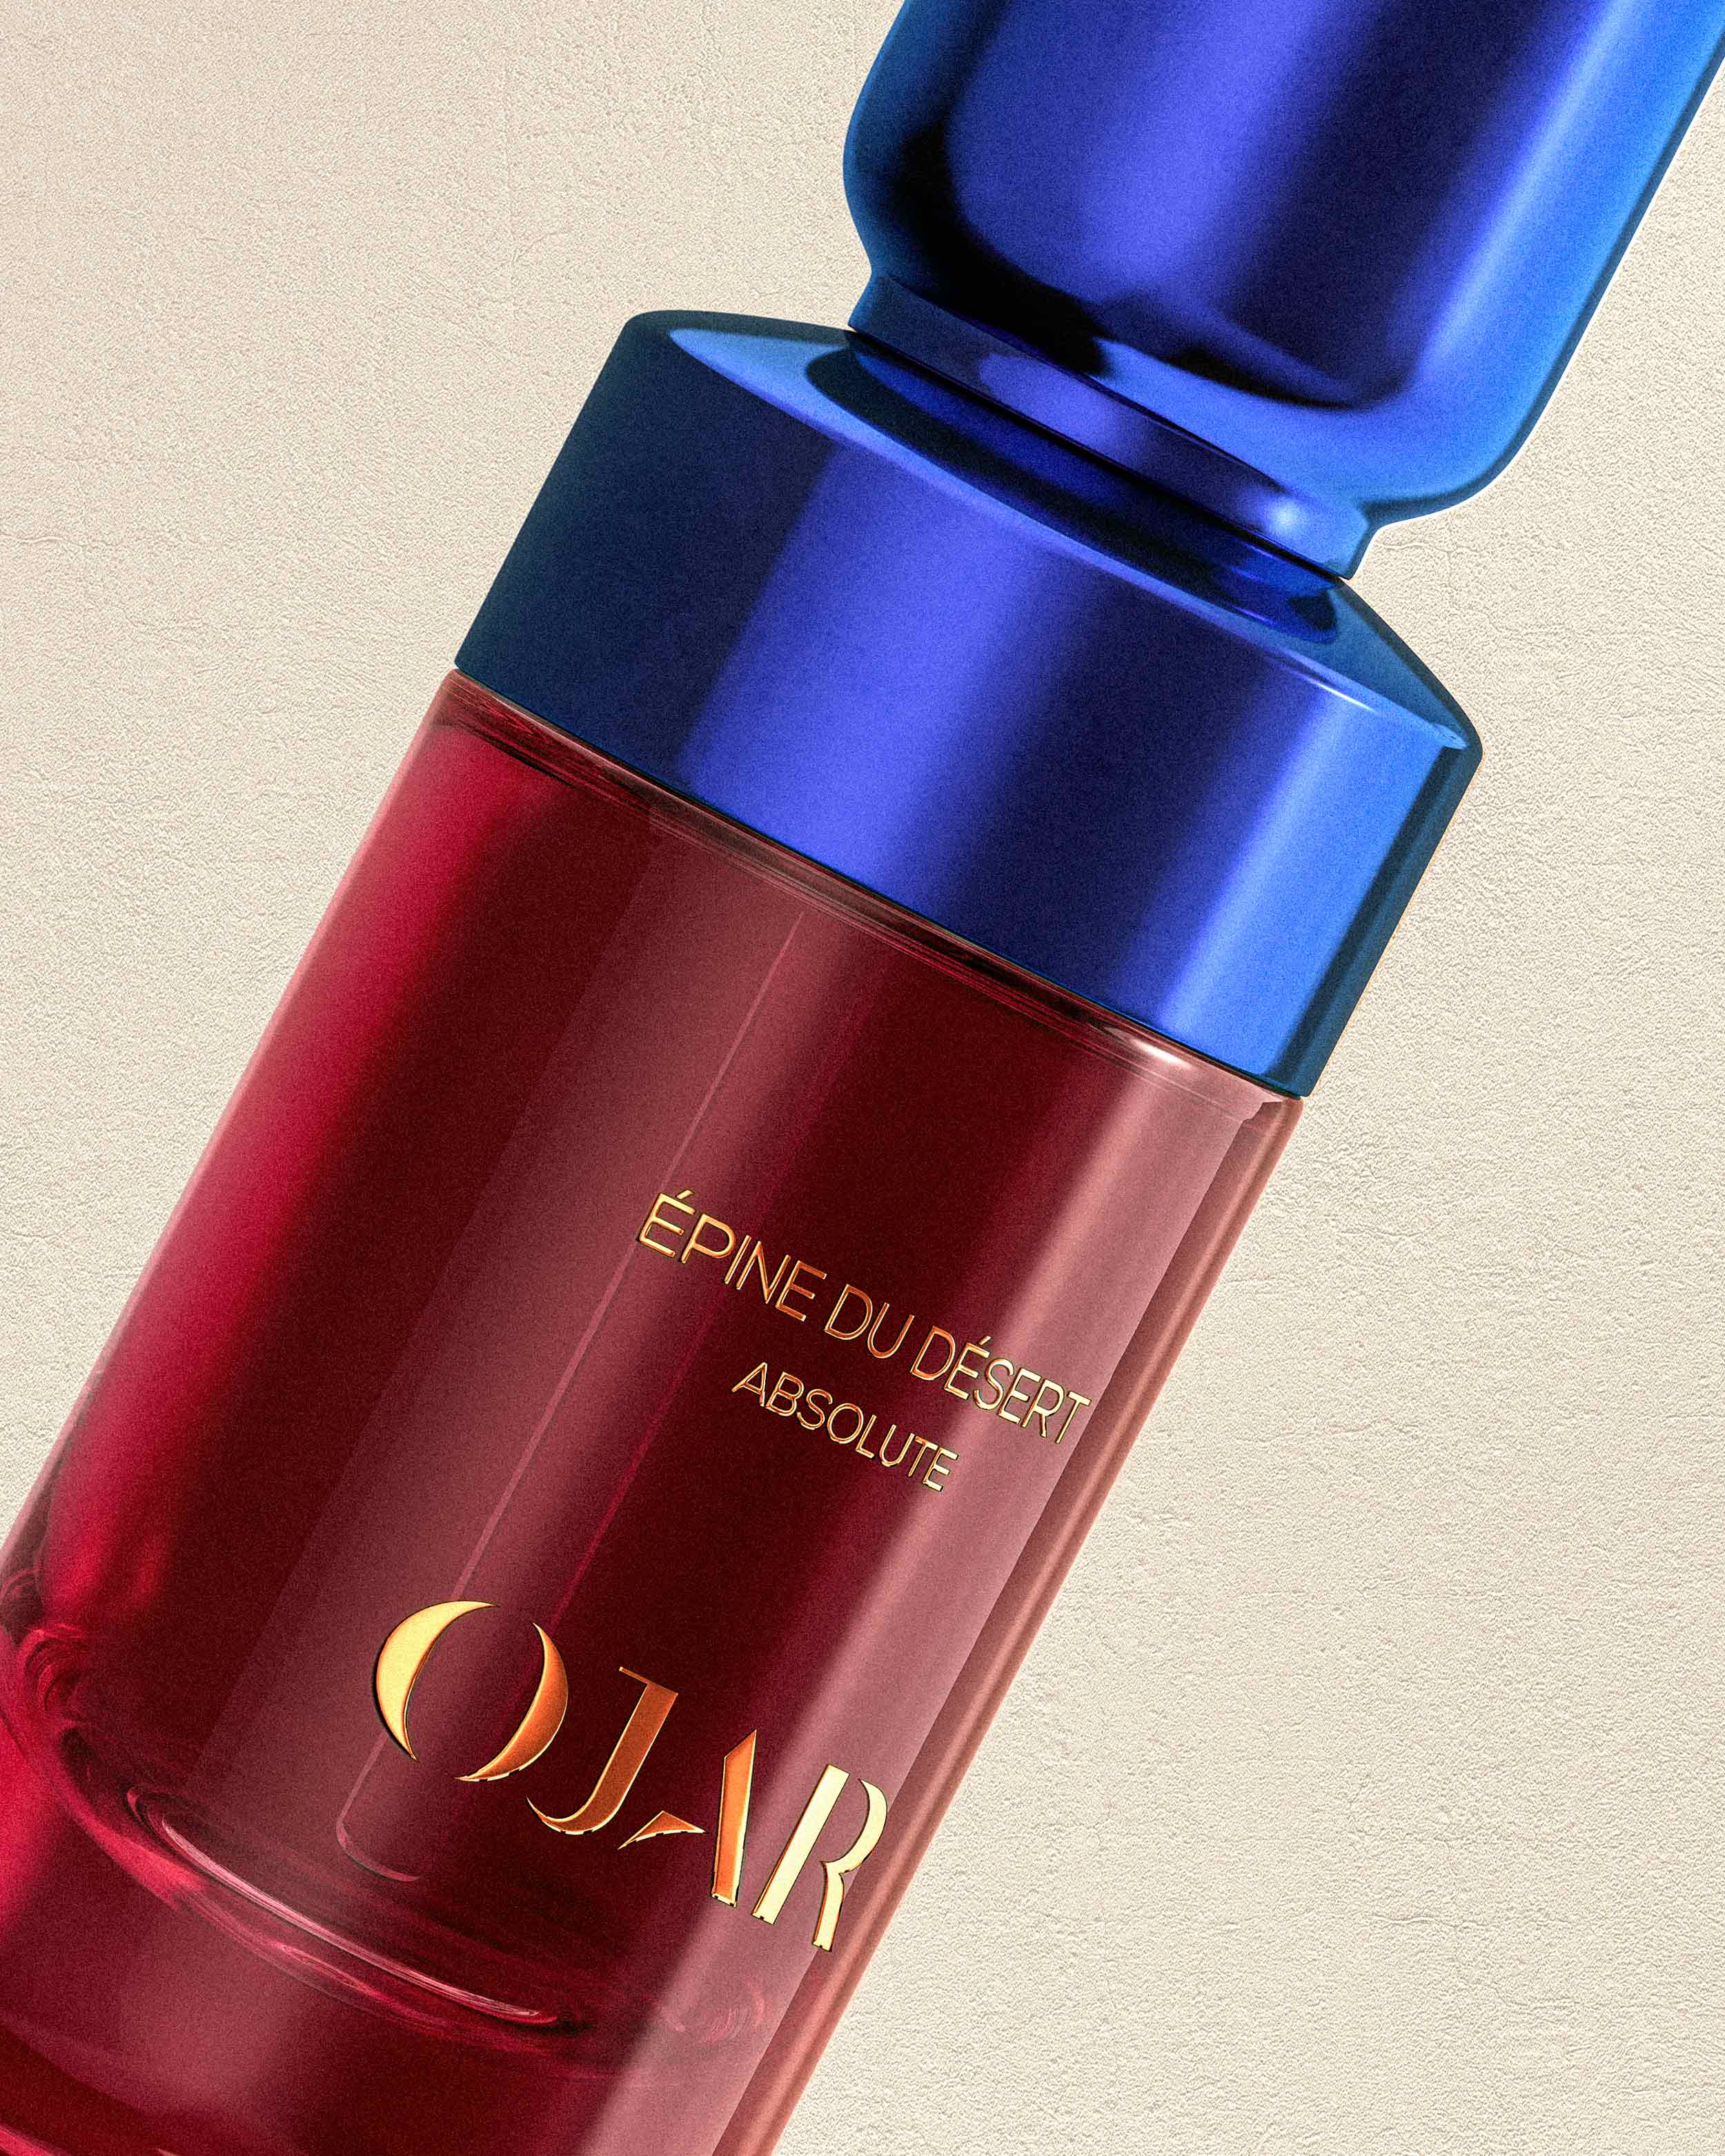 OJAR Absolute Epine Du Desert Perfume Close Up